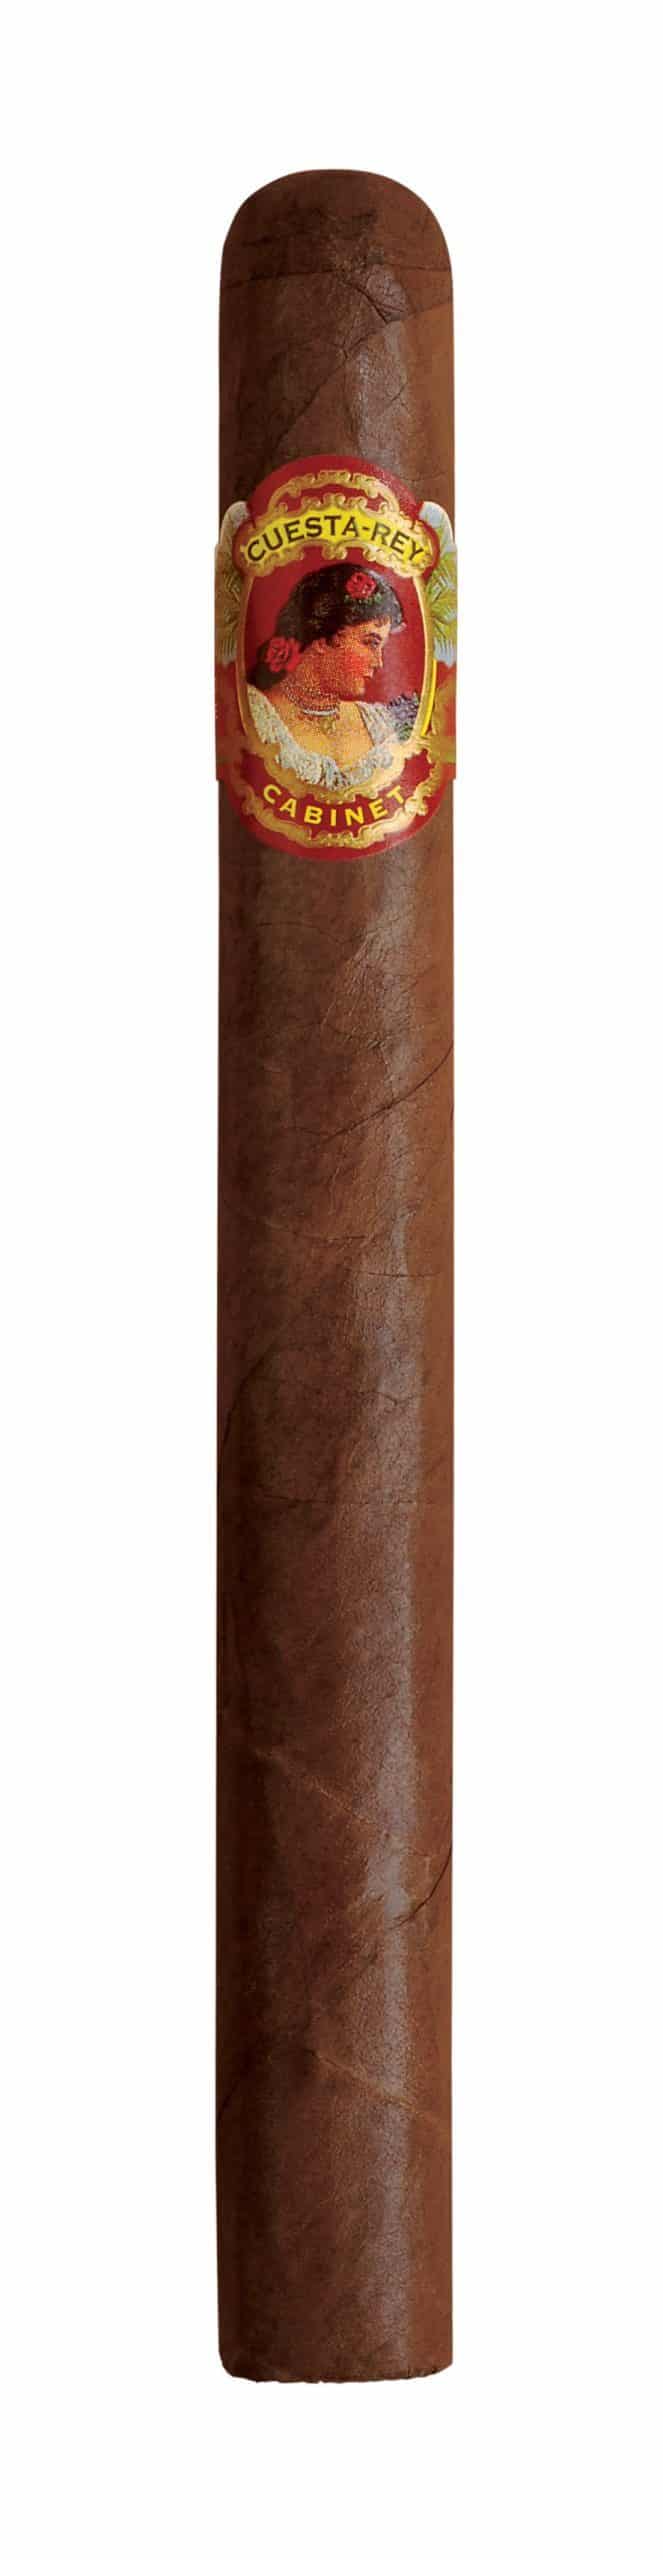 cuesta rey cabinet 8 9 8 single cigar